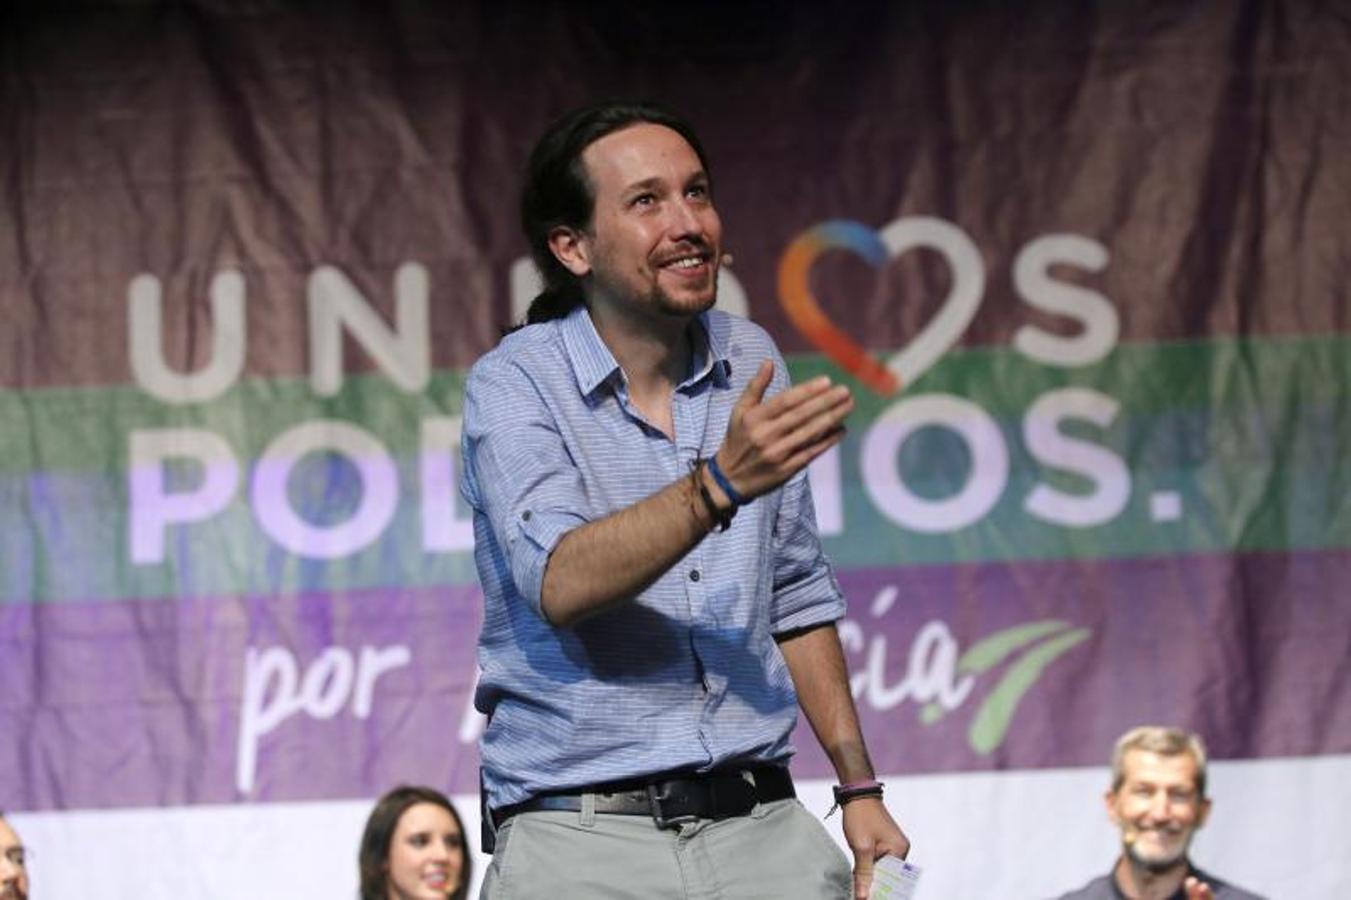 El candidato a la presidencia del Gobierno de Unidos Podemos, Pablo Iglesias, durante el acto electoral en el teatro Cervantes de Almeria.